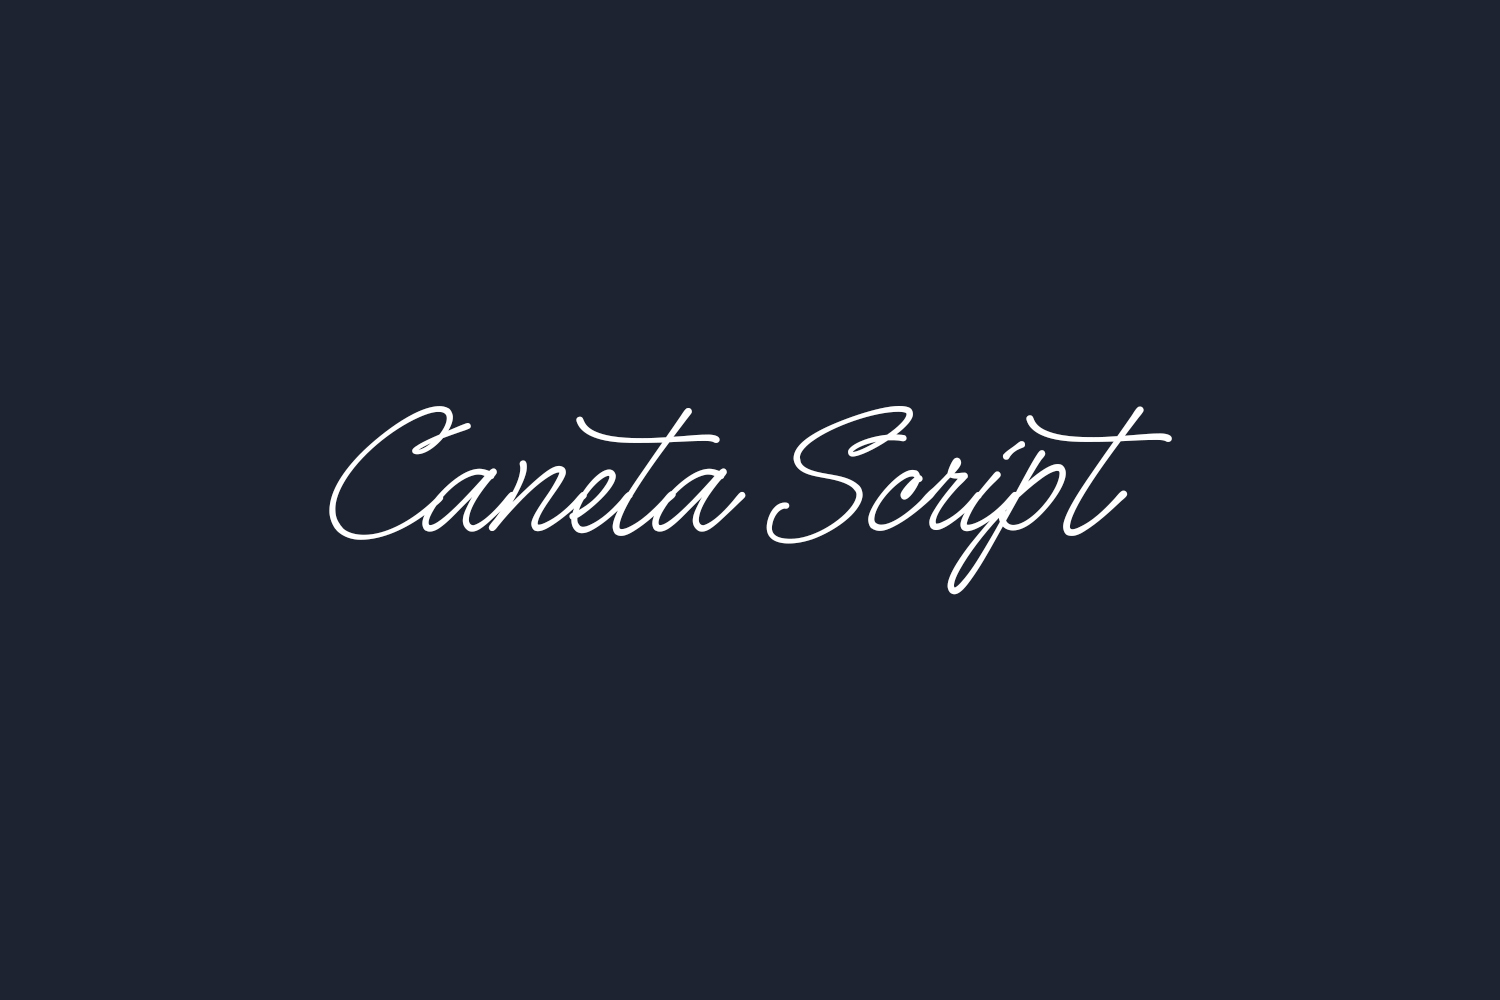 Caneta Script Free Font